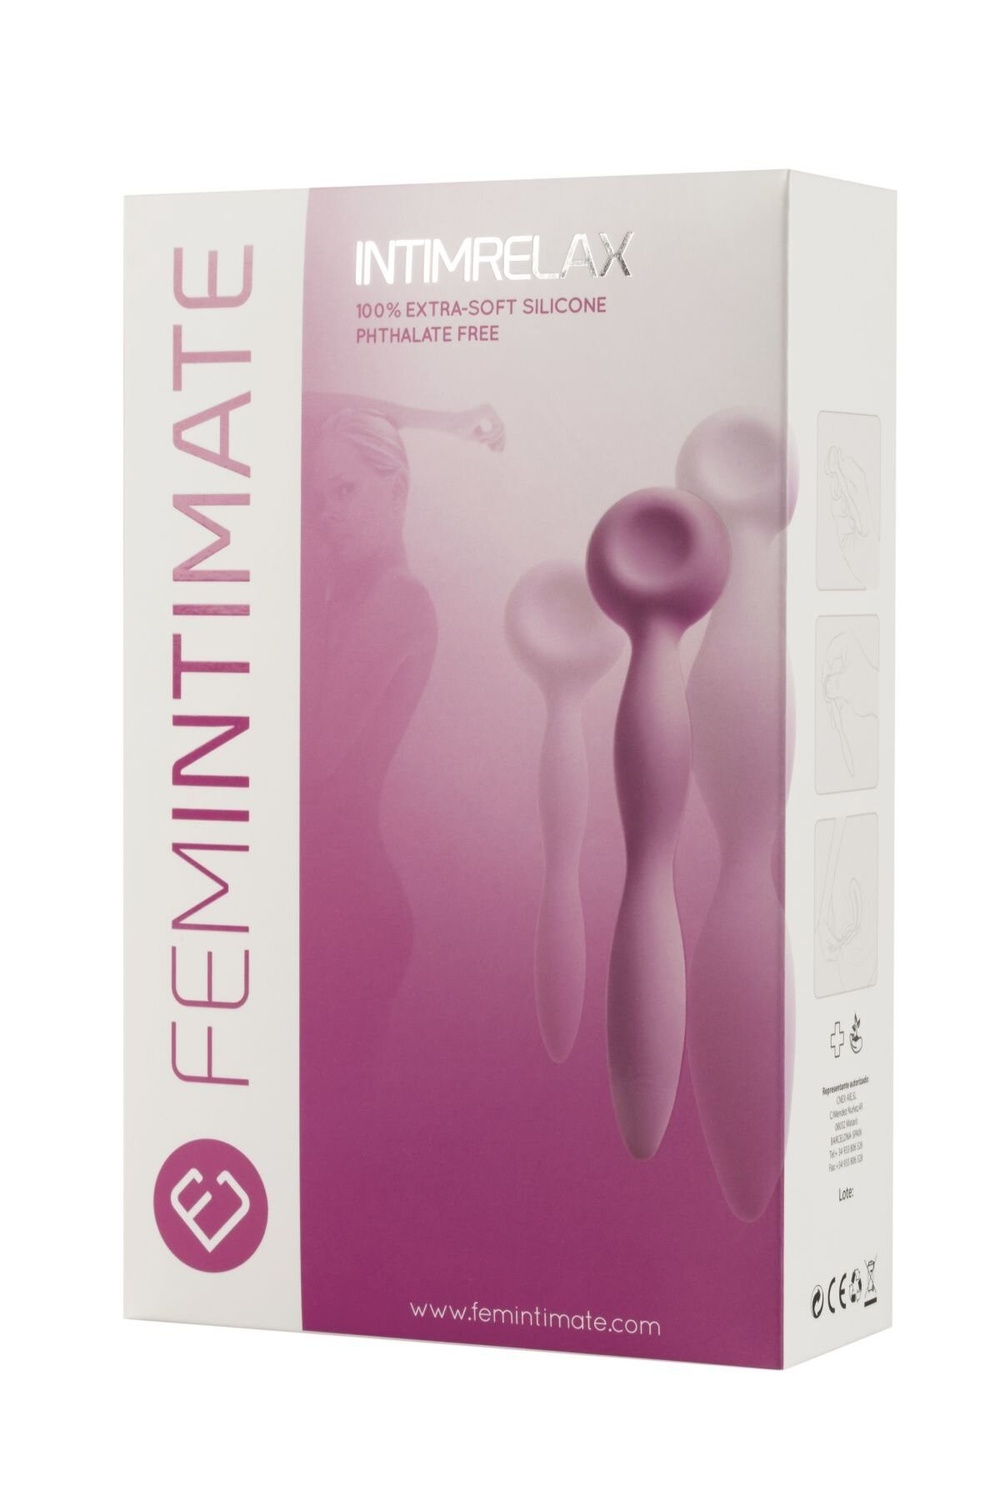 Система відновлення при вагините Femintimate Intimrelax для зняття спазмів при введенні фото